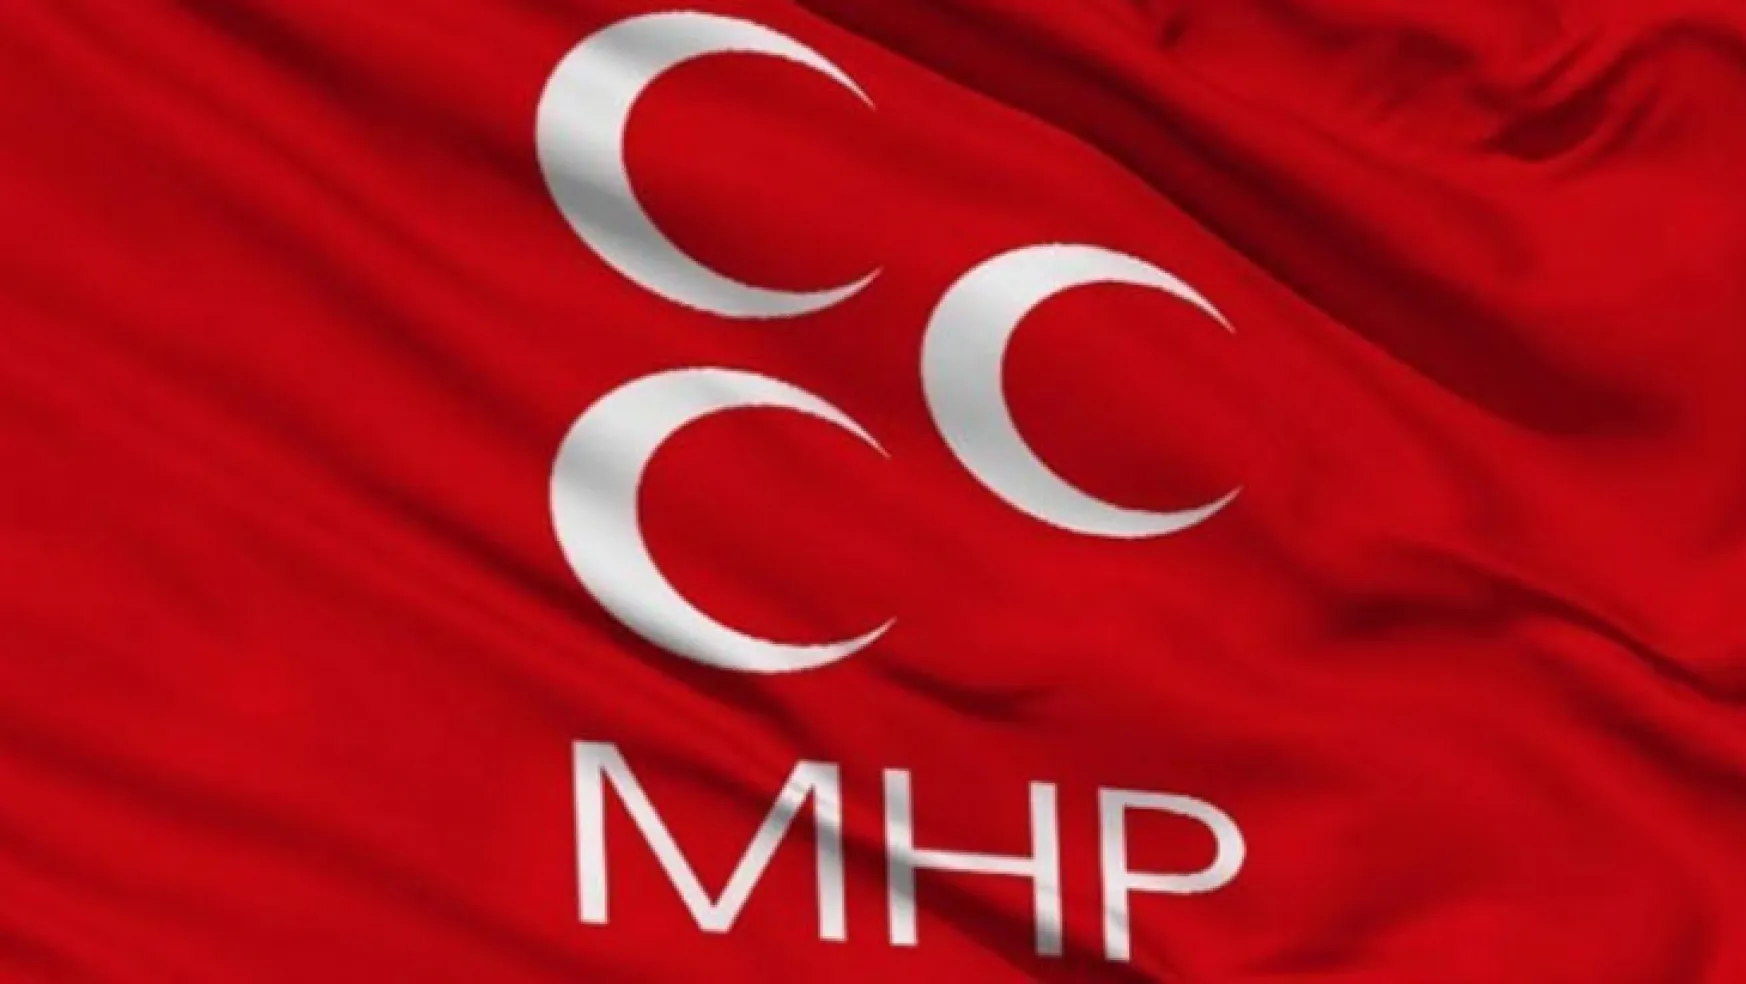 MHP'den cinsiyet değişikliğine karşı yasa teklifi